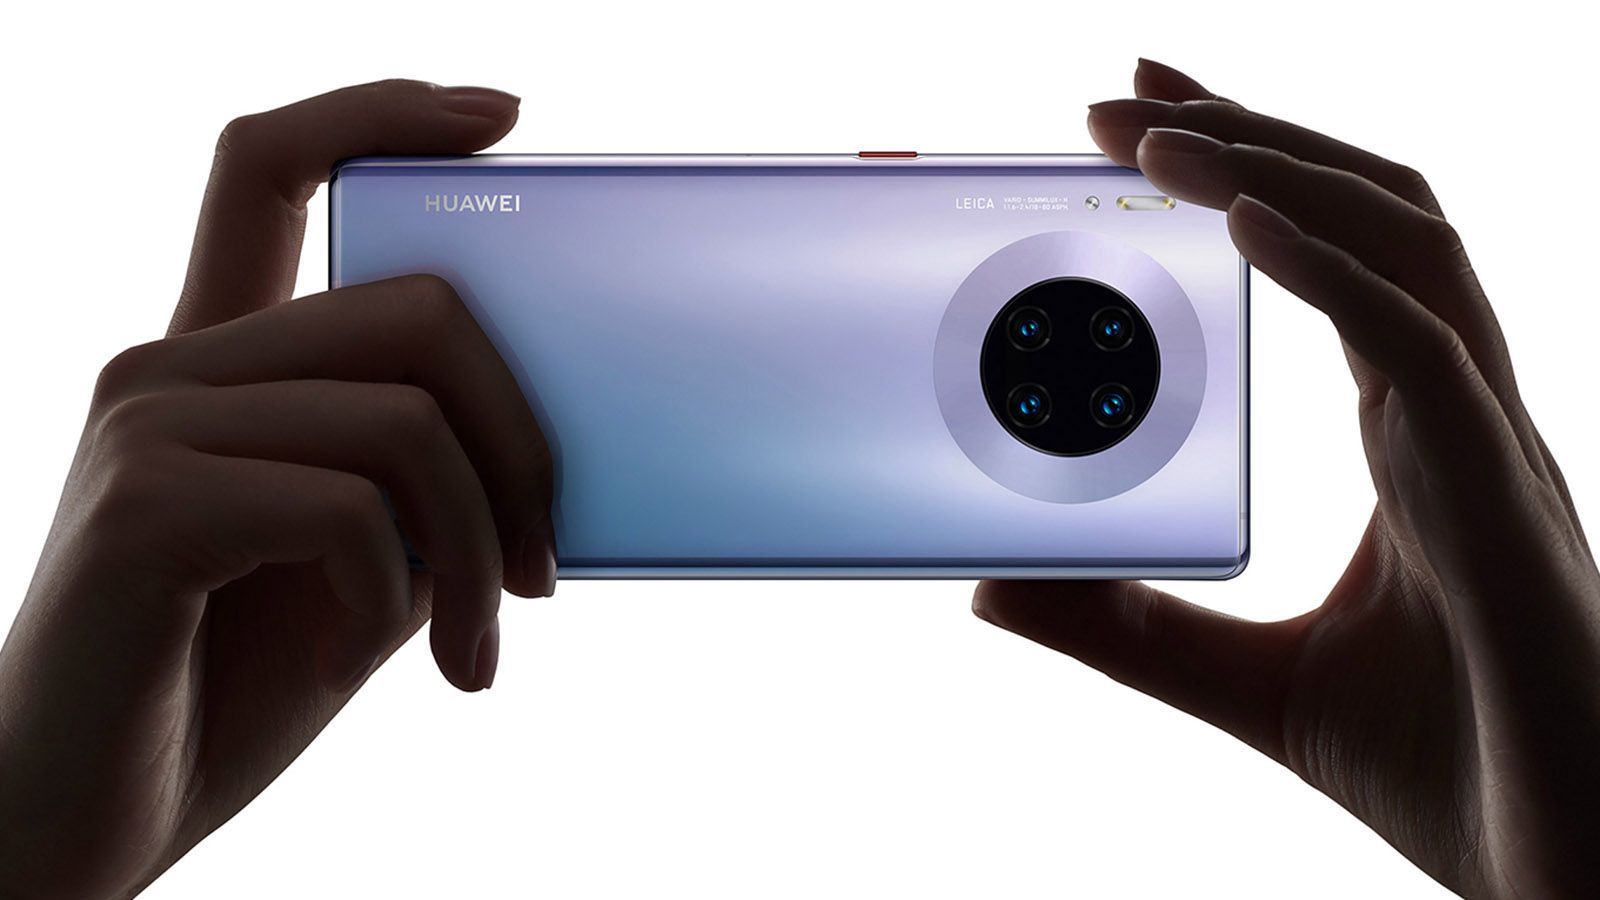 Huawei Mate 30 cameras image 1